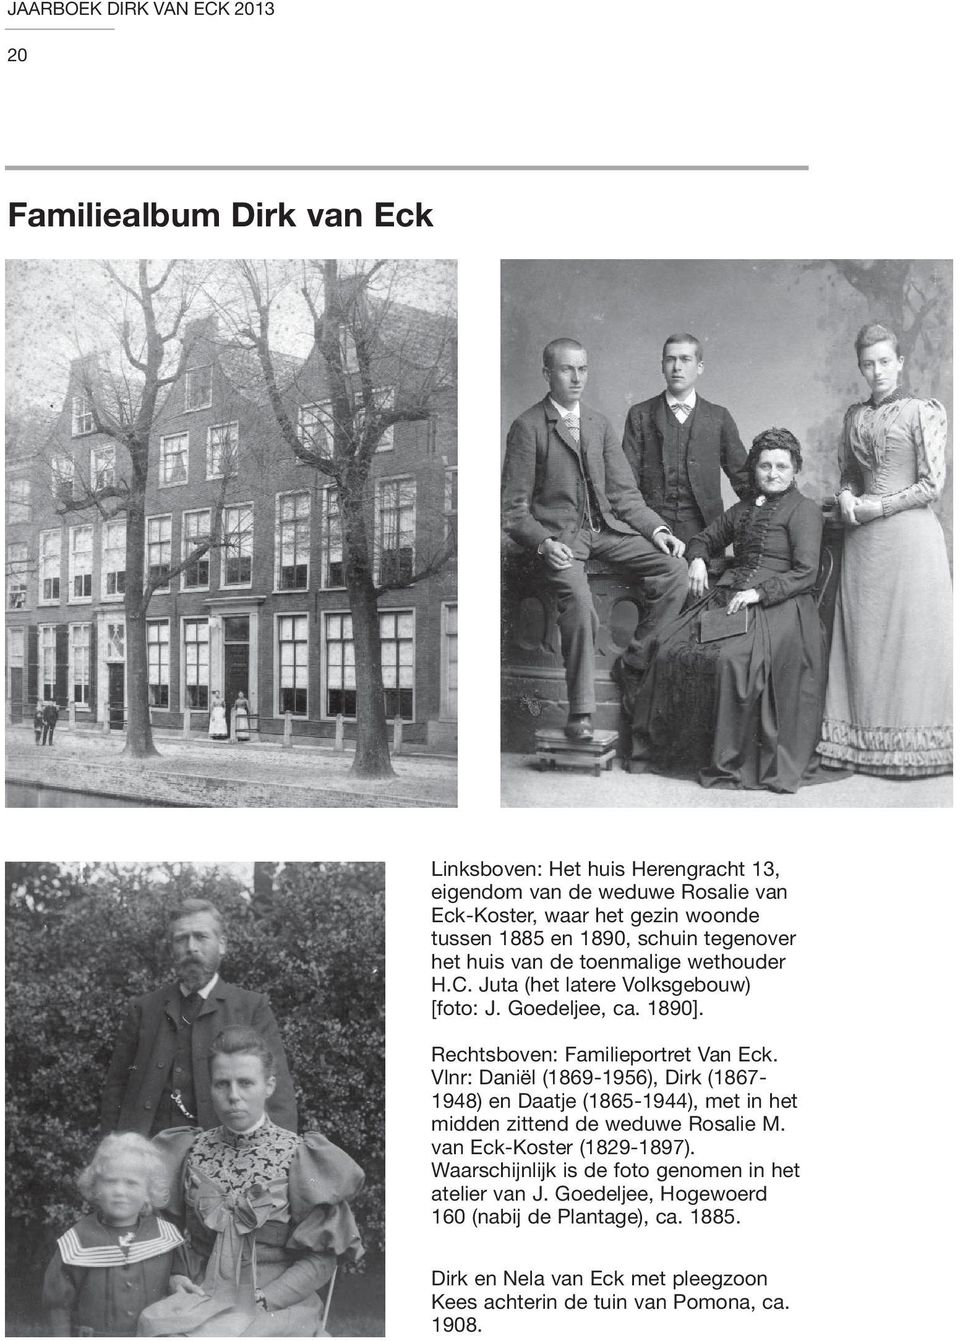 Vlnr: Daniël (1869-1956), Dirk (1867-1948) en Daatje (1865-1944), met in het midden zittend de weduwe Rosalie M. van Eck-Koster (1829-1897).